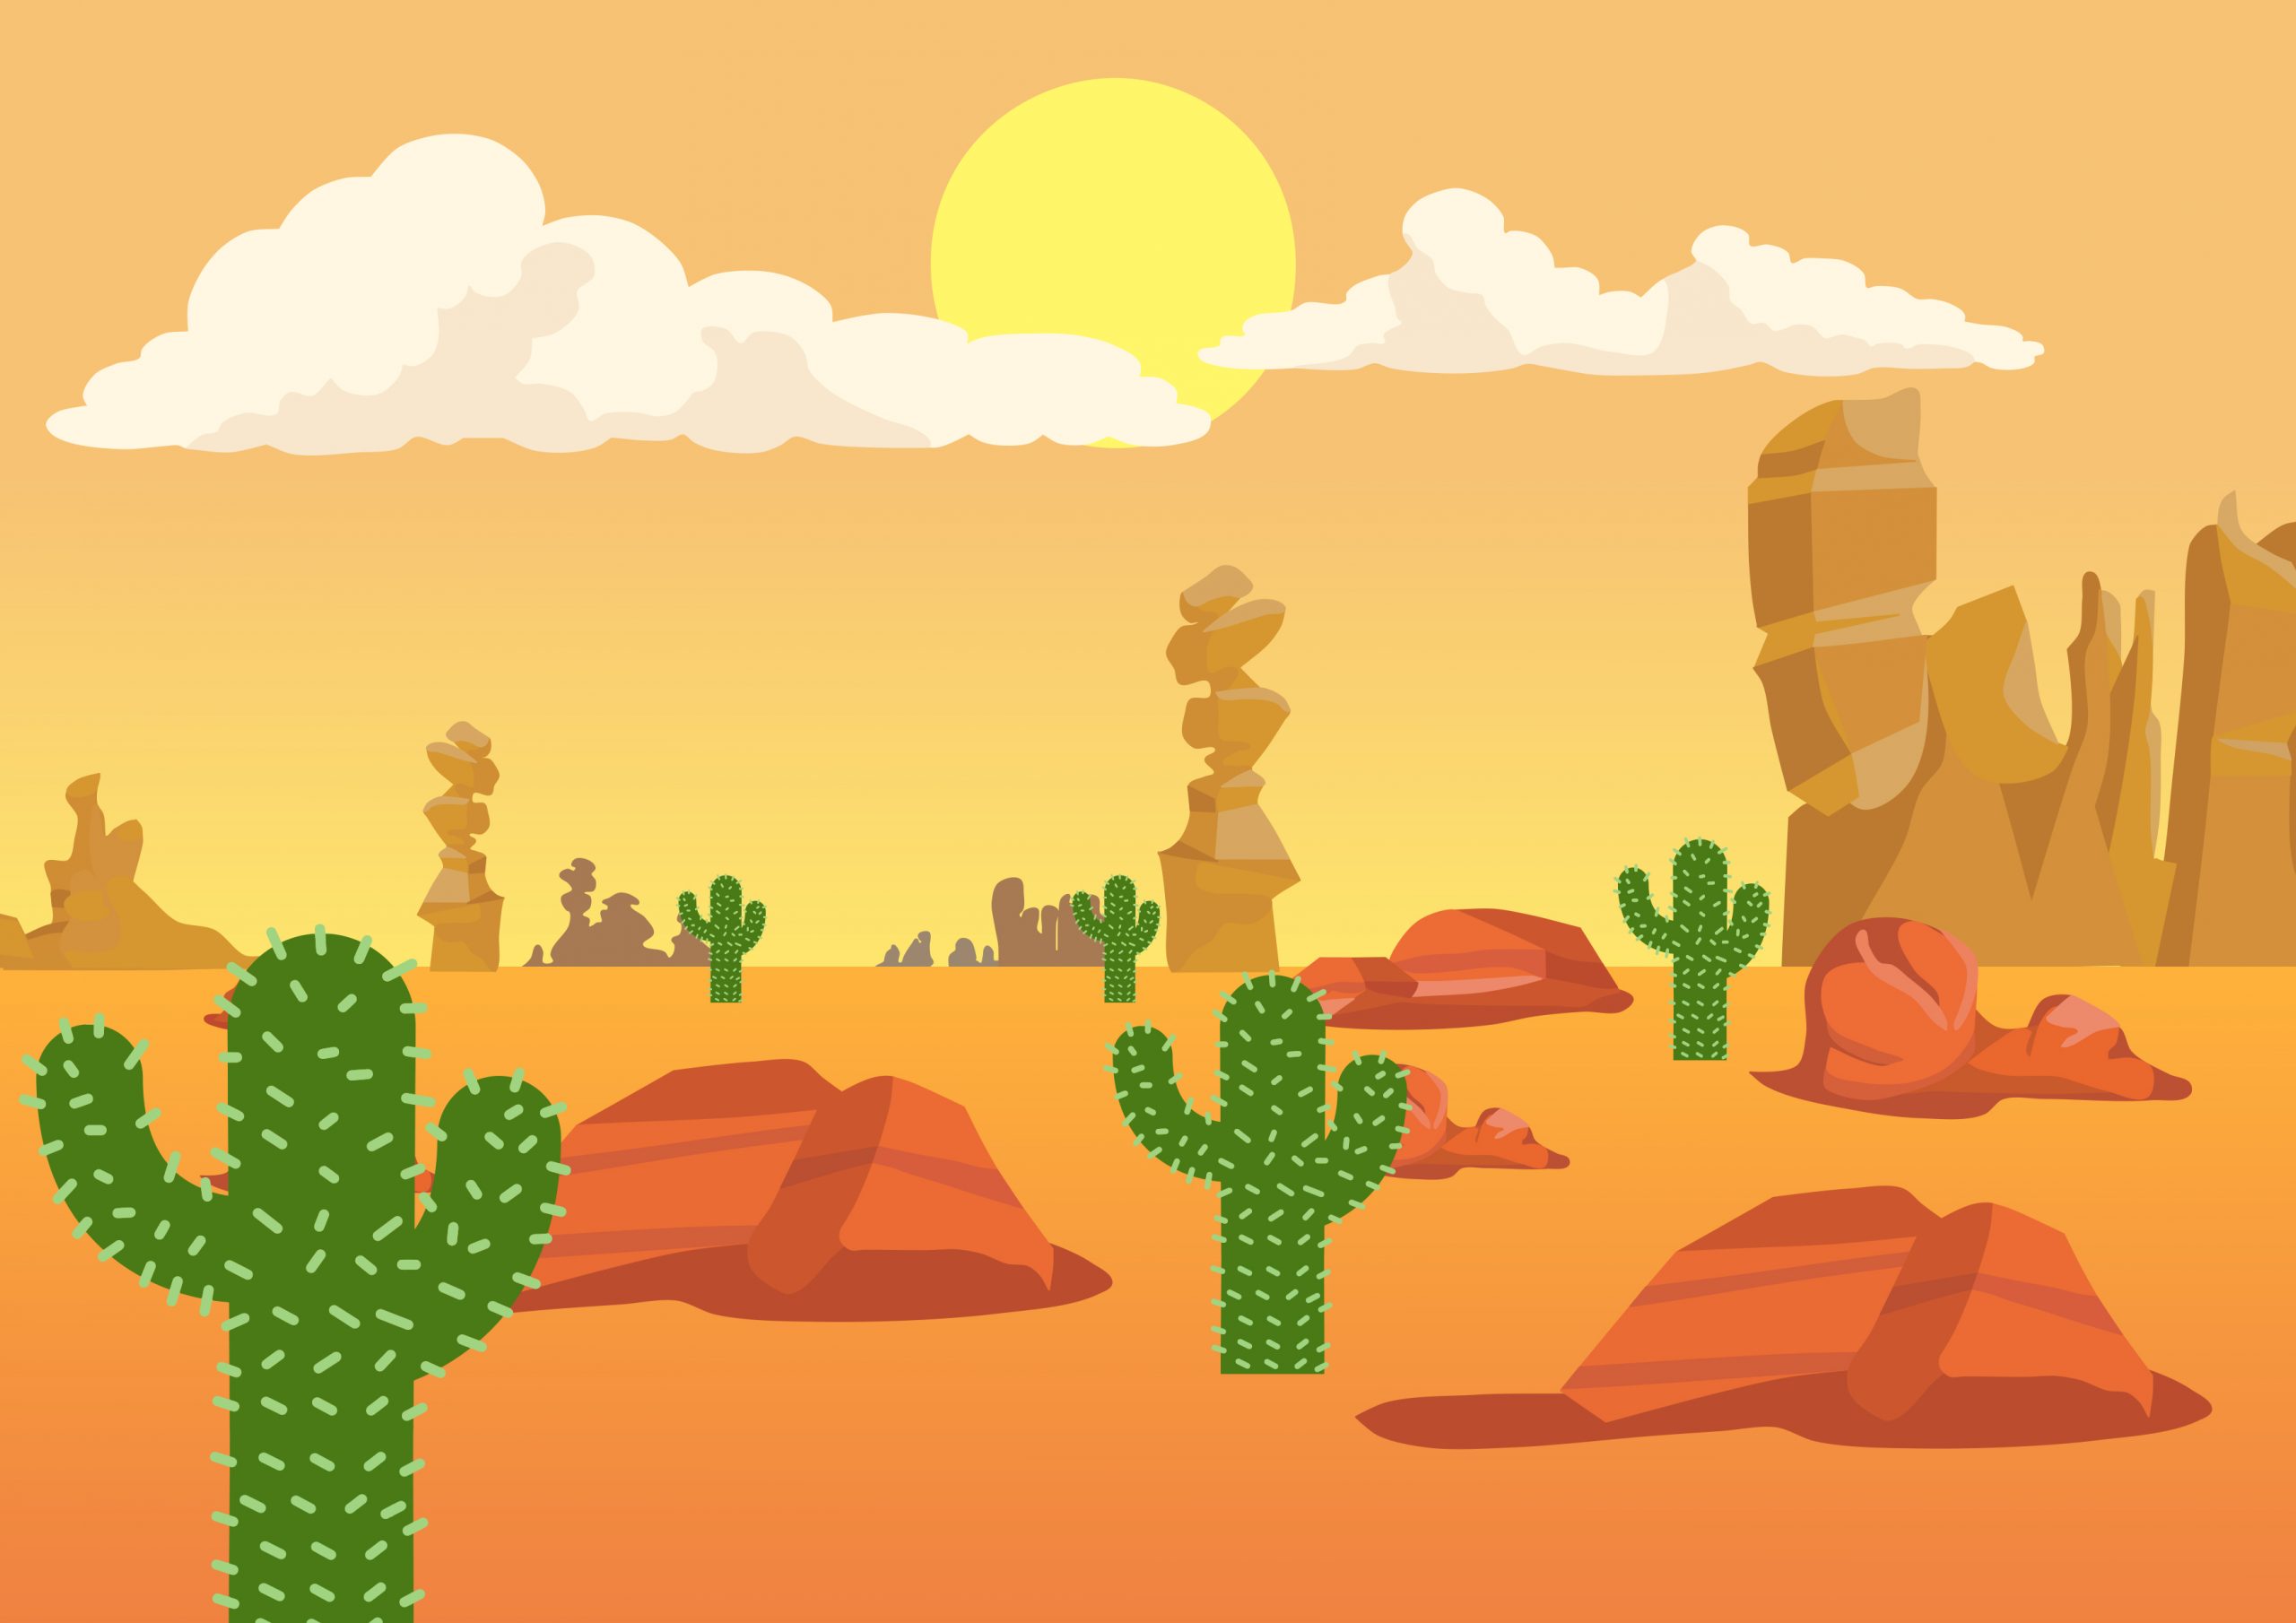 Desert Animal flashcards + FREE Desert background